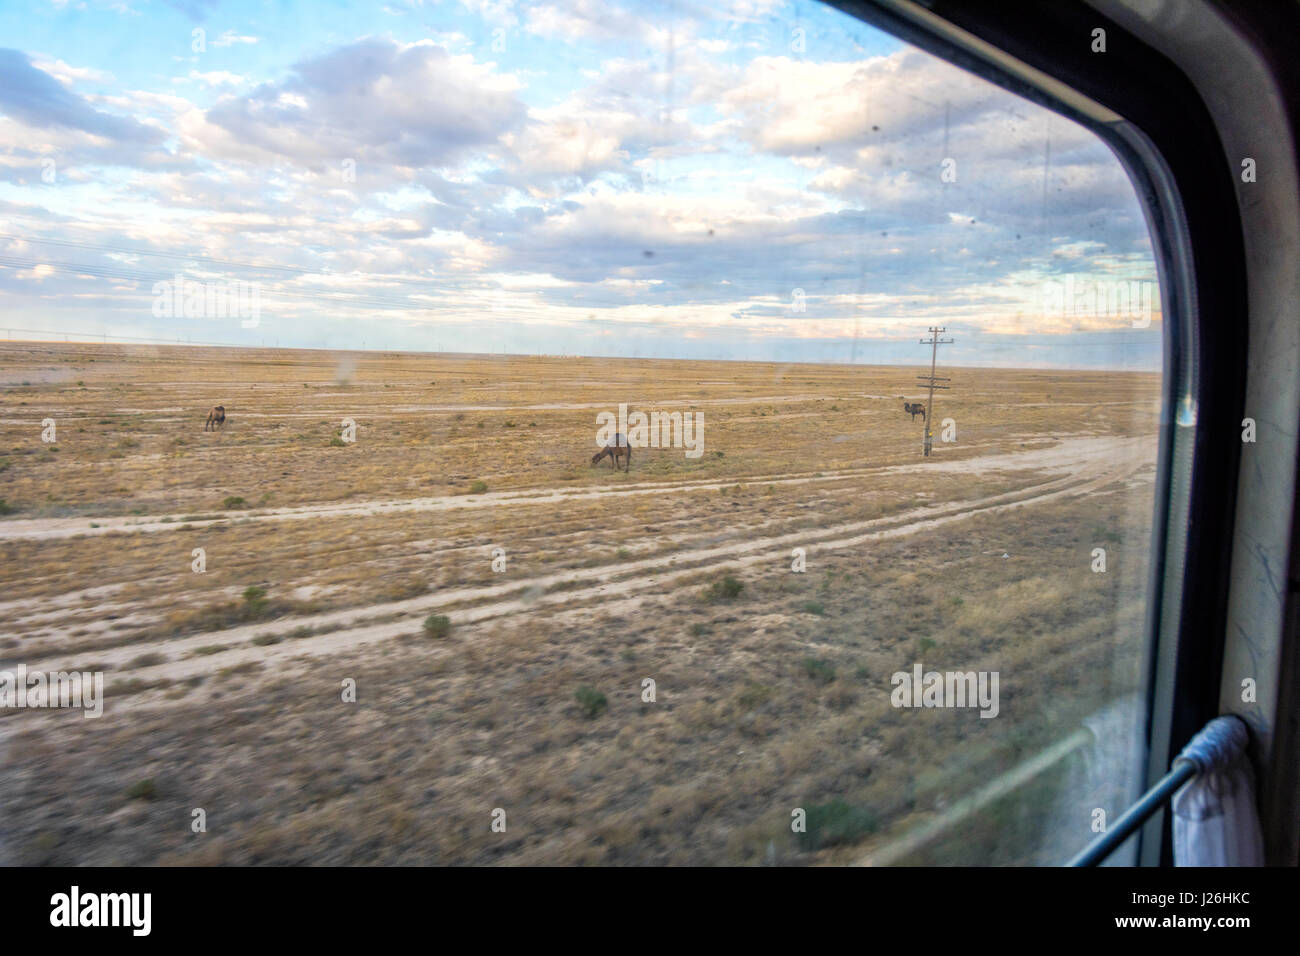 Camels in the semi desert over the train window in Karakalpakstan autonomous region, Uzbekistan Stock Photo